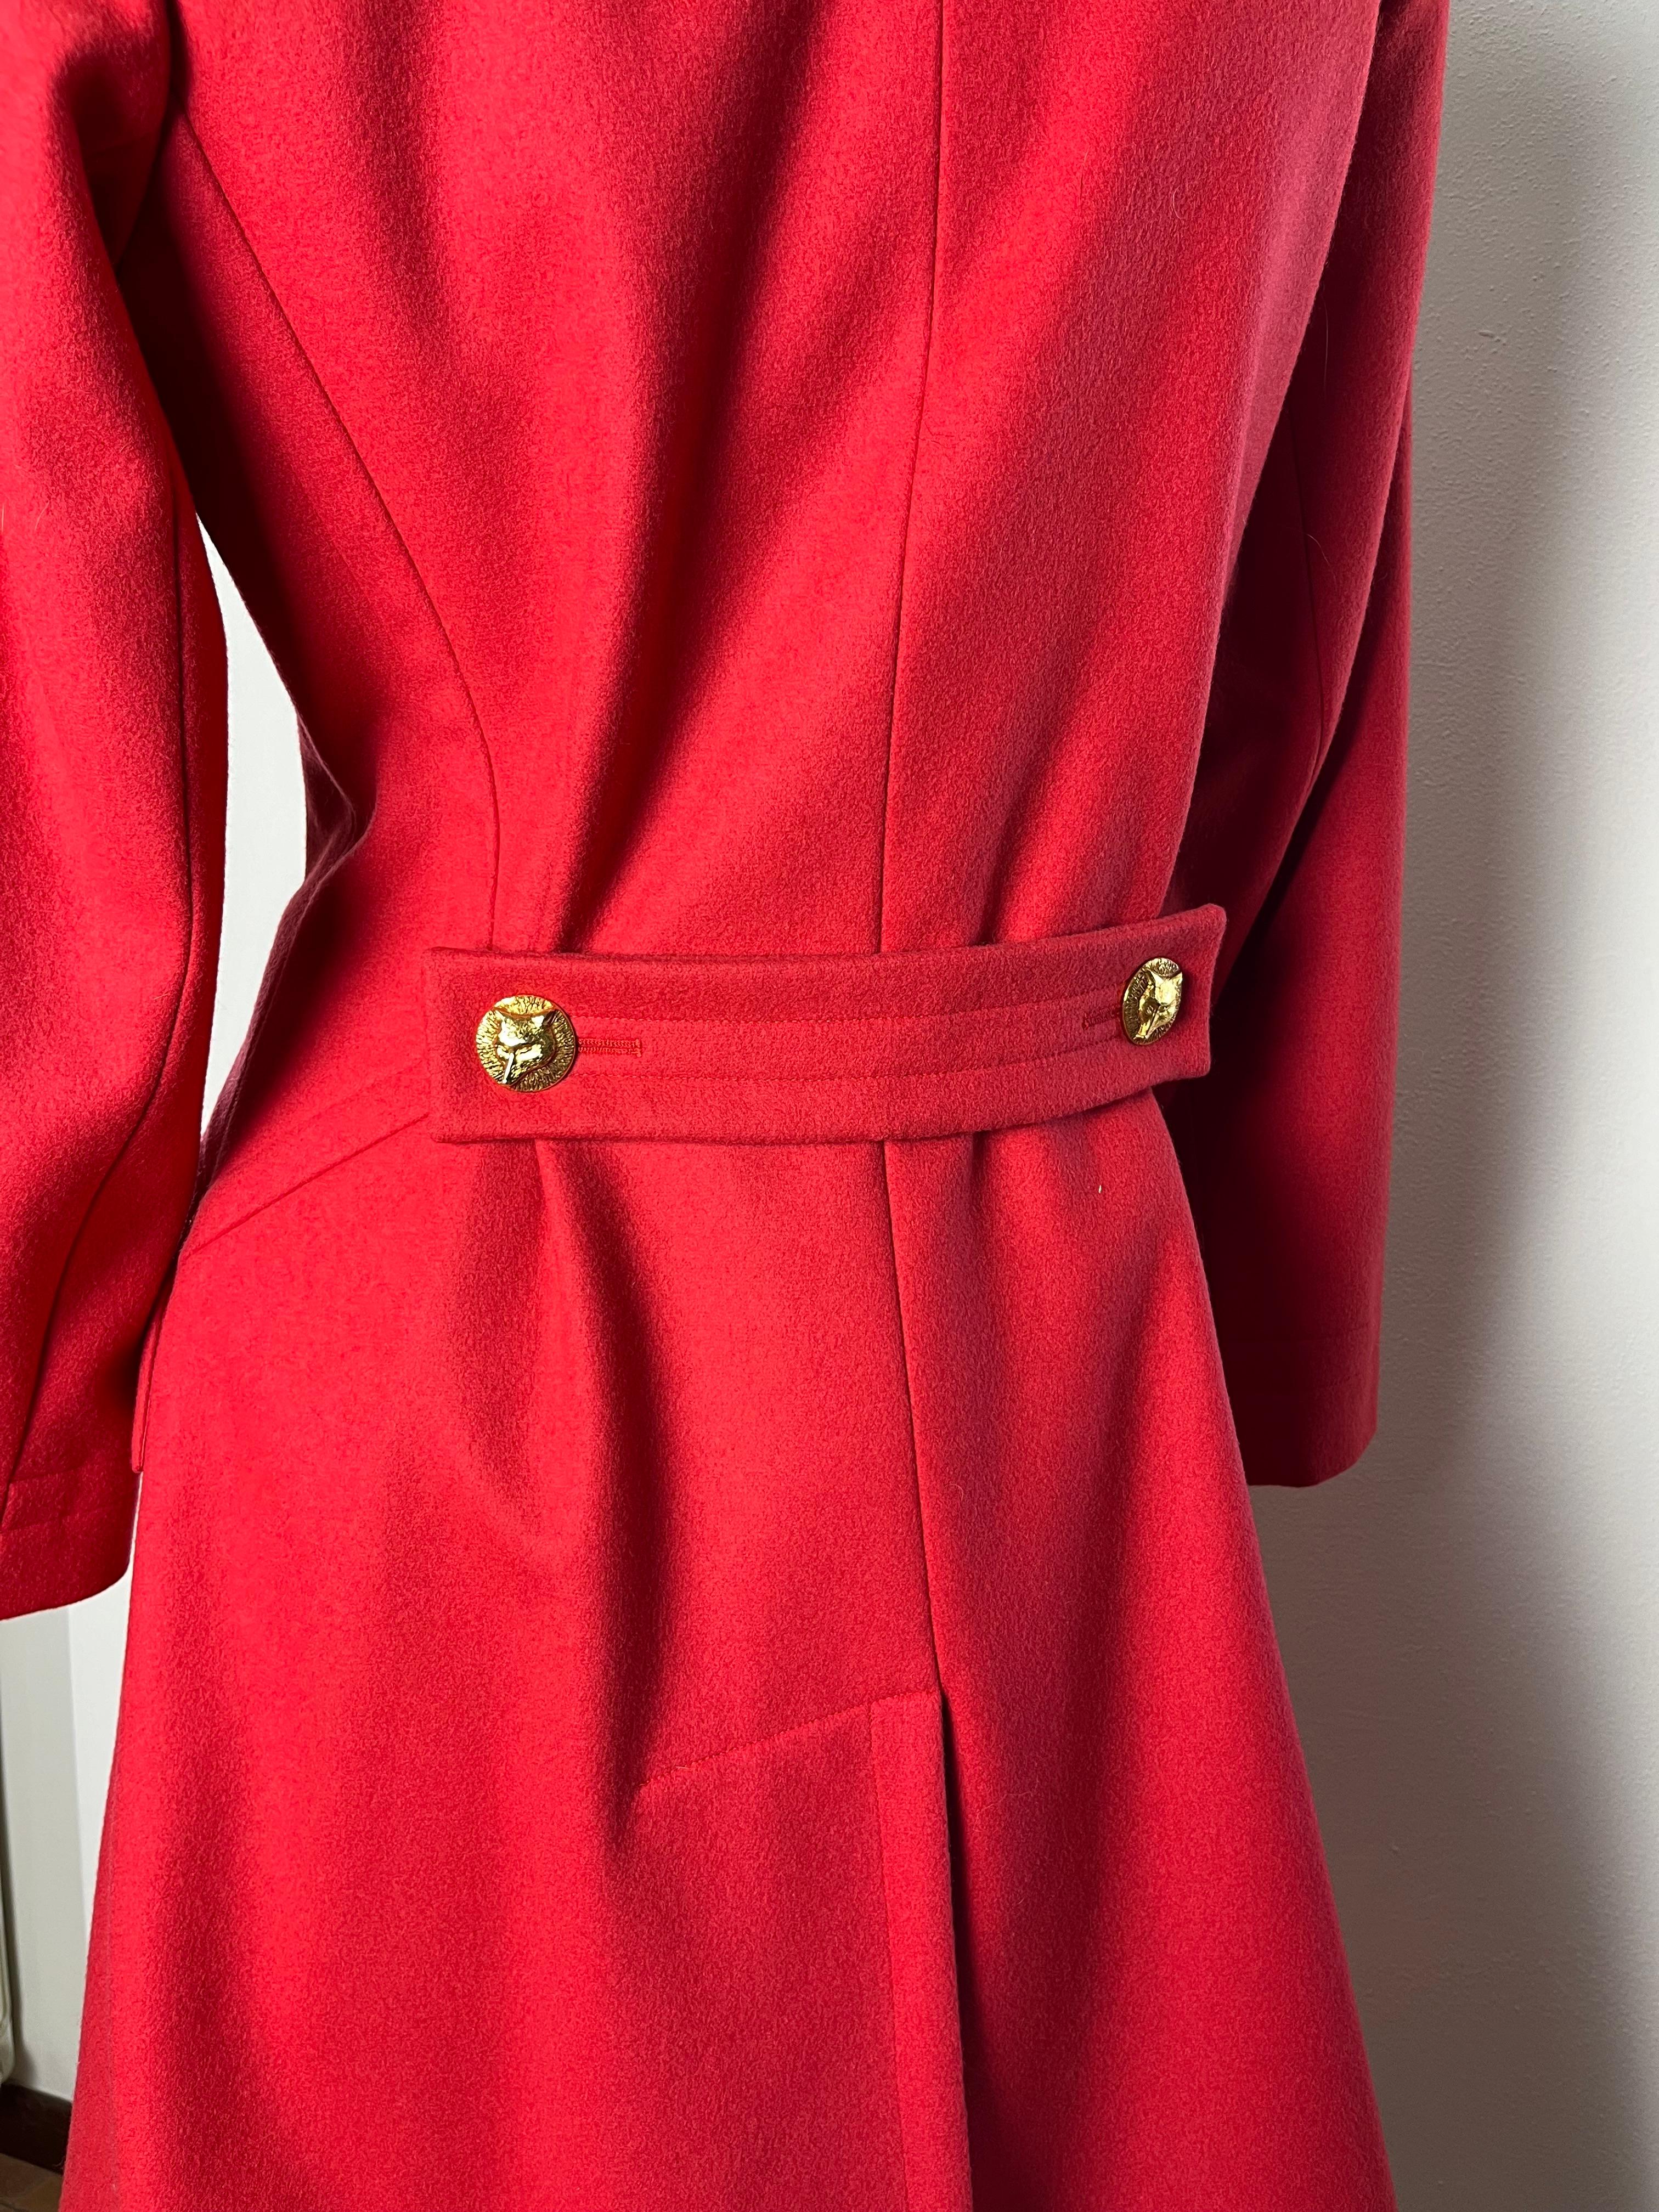 Yves Saint Laurent Haute Couture straordinario e raro cappotto vintage in lana rosso corallo con bottoni dorati gioielli unici incisi con una volpe.
Effetto cut-out e tasche sotto patta, foderato-petto, maniche lunghe, martingale e spacco